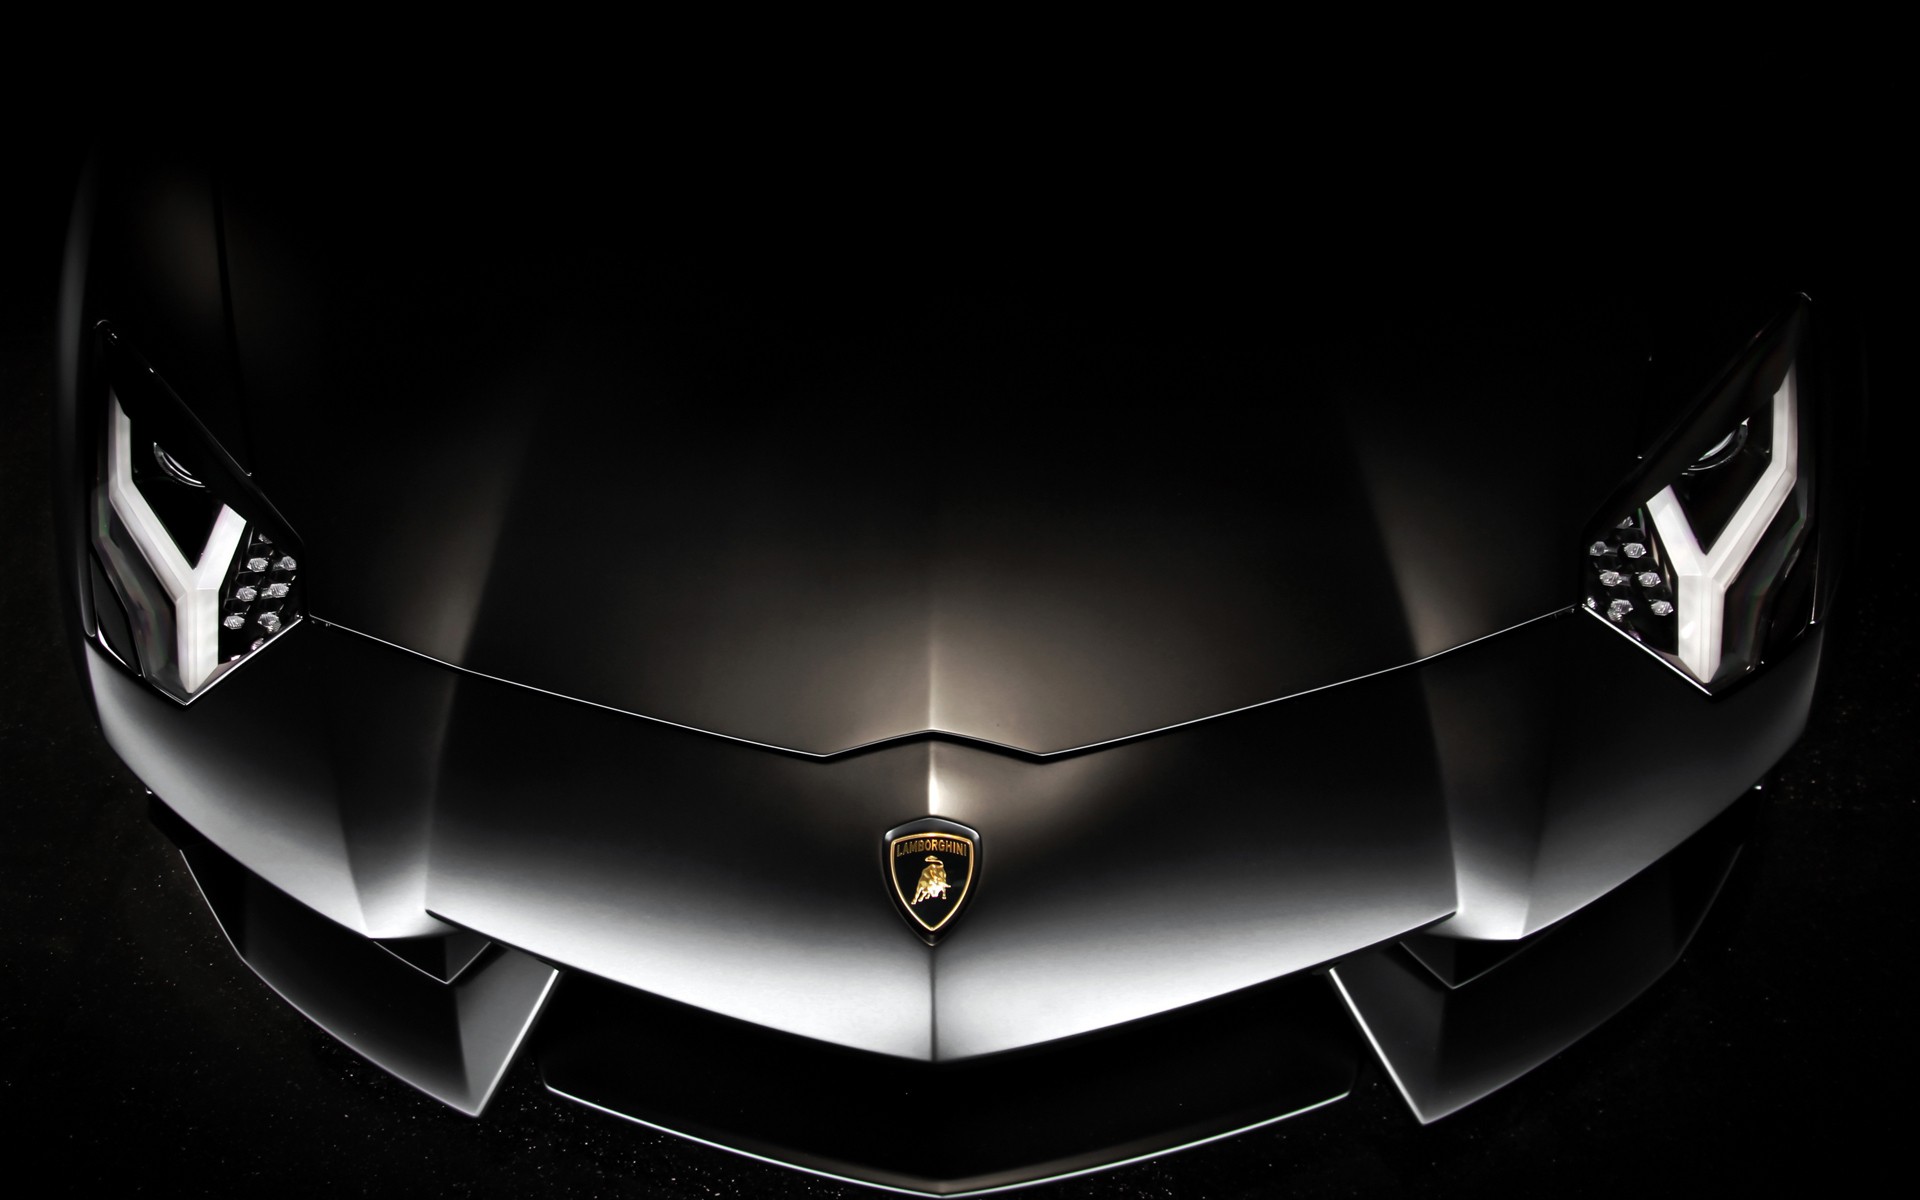 Lamborghini Aventador, wallpaper: Sự kết hợp tuyệt mỹ giữa thiết kế và công nghệ giúp cho Lamborghini Aventador luôn là niềm kiêu hãnh của giới xe hơi thế giới. Hình ảnh về chiếc Lamborghini Aventador đầy mê hoặc sẽ là điểm nhấn hoàn hảo cho thiết bị của bạn. Tải ngay để trở thành người đầu tiên sở hữu.